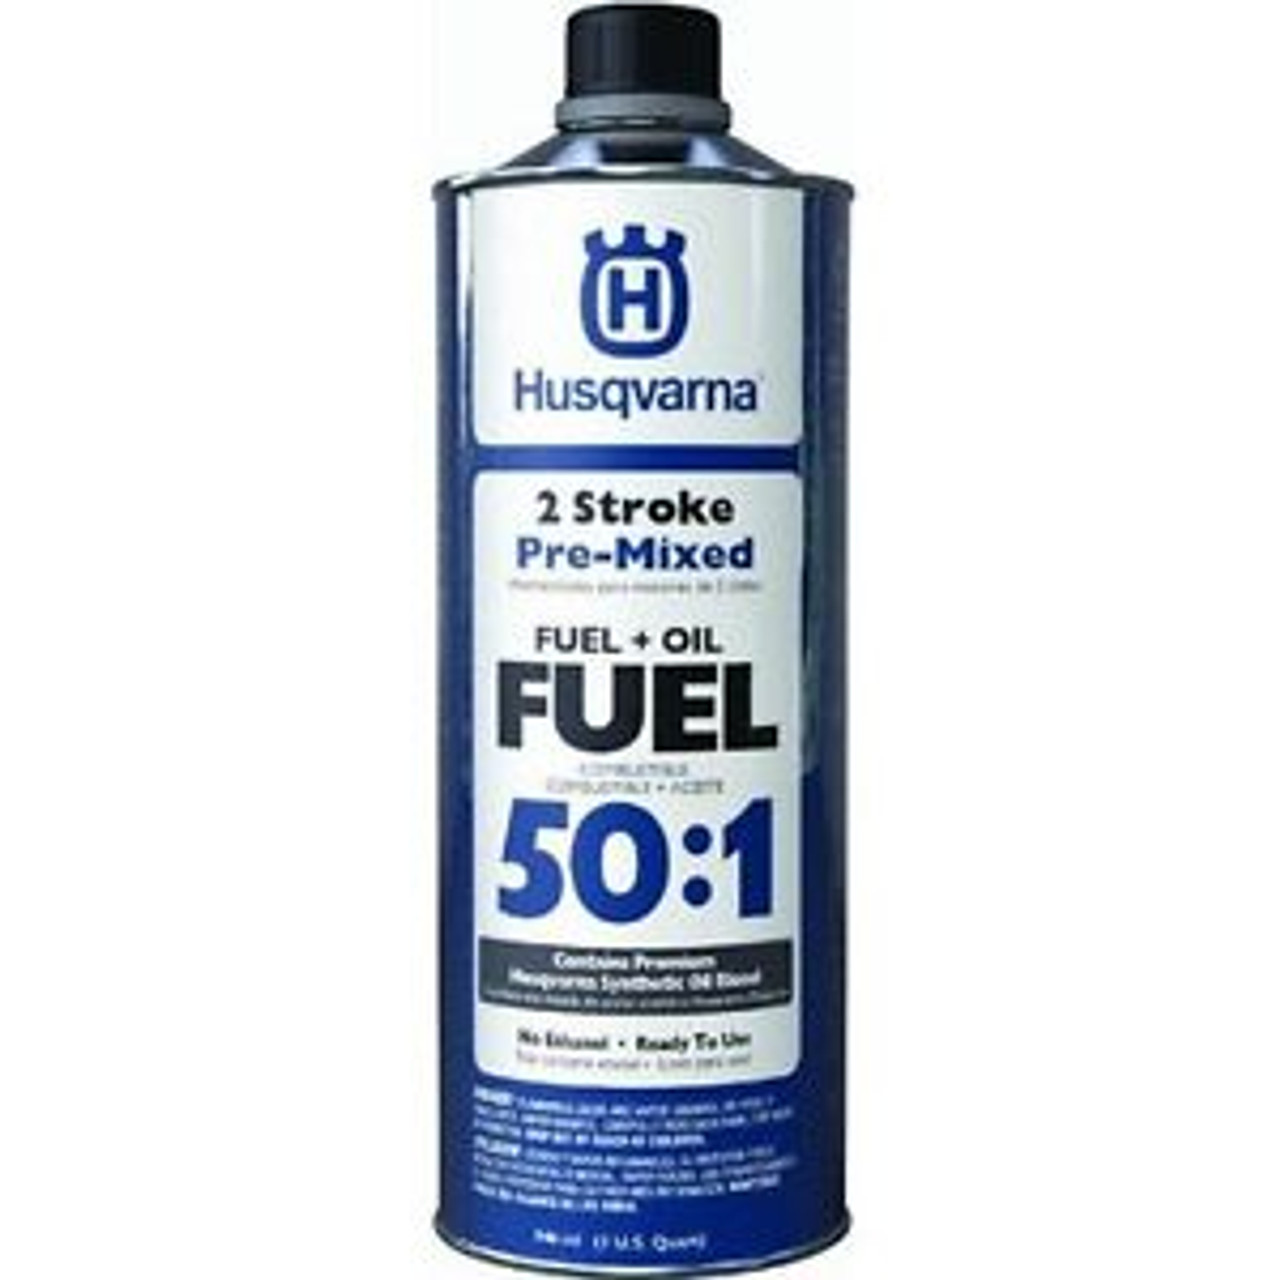 Husqvarna 50:1 2-Stroke Pre-Mixed Fuel and Oil 1 Quart